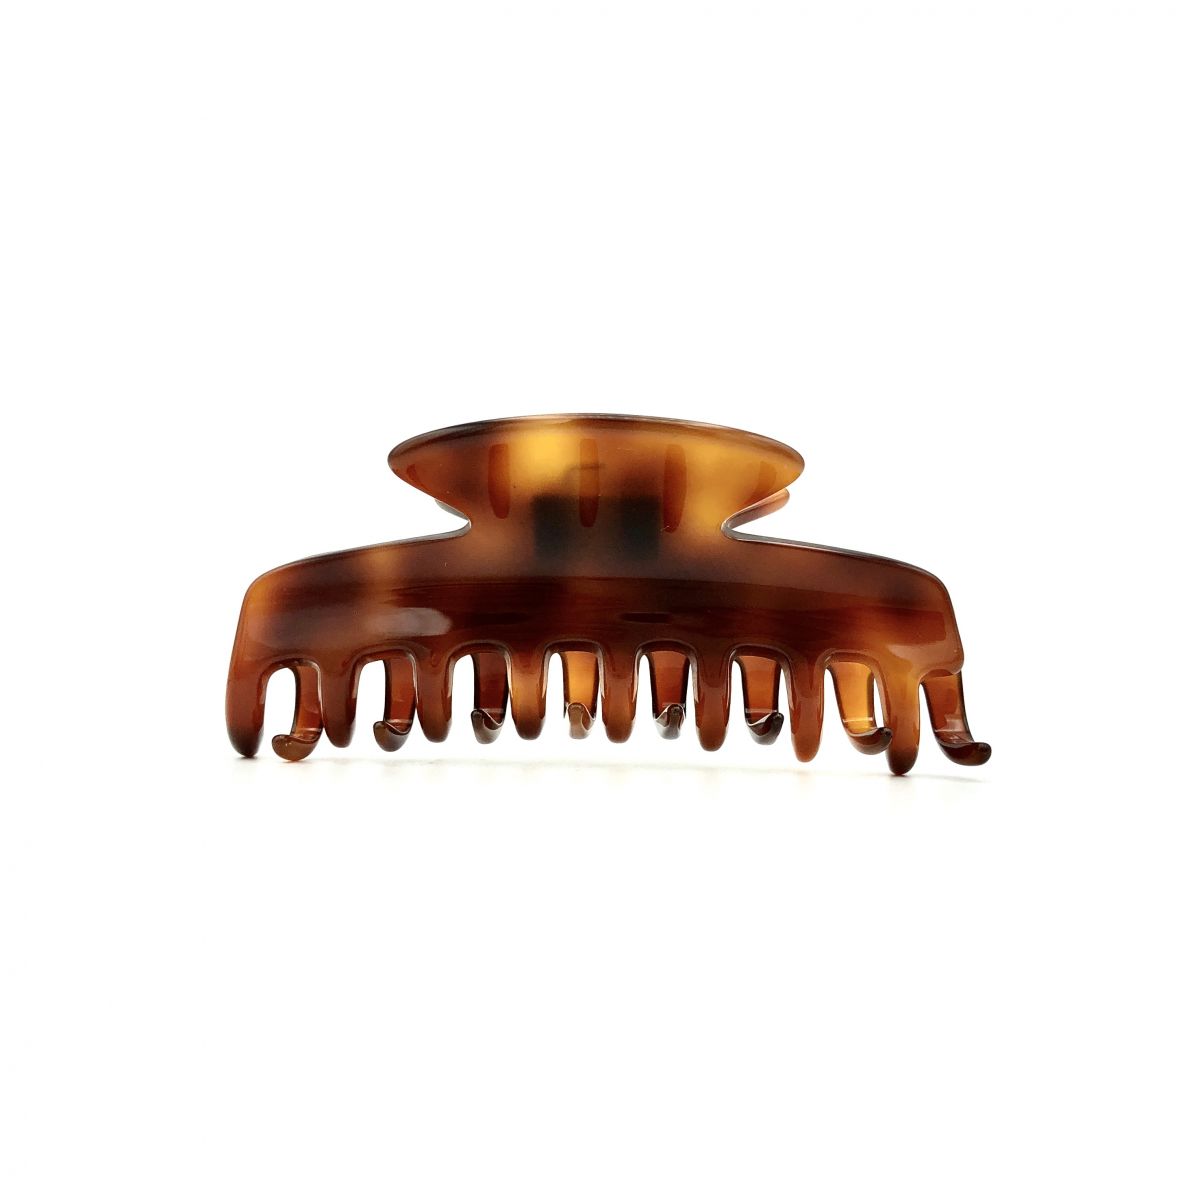 Haarklammer rotbraun - eng, klein - 8 cm